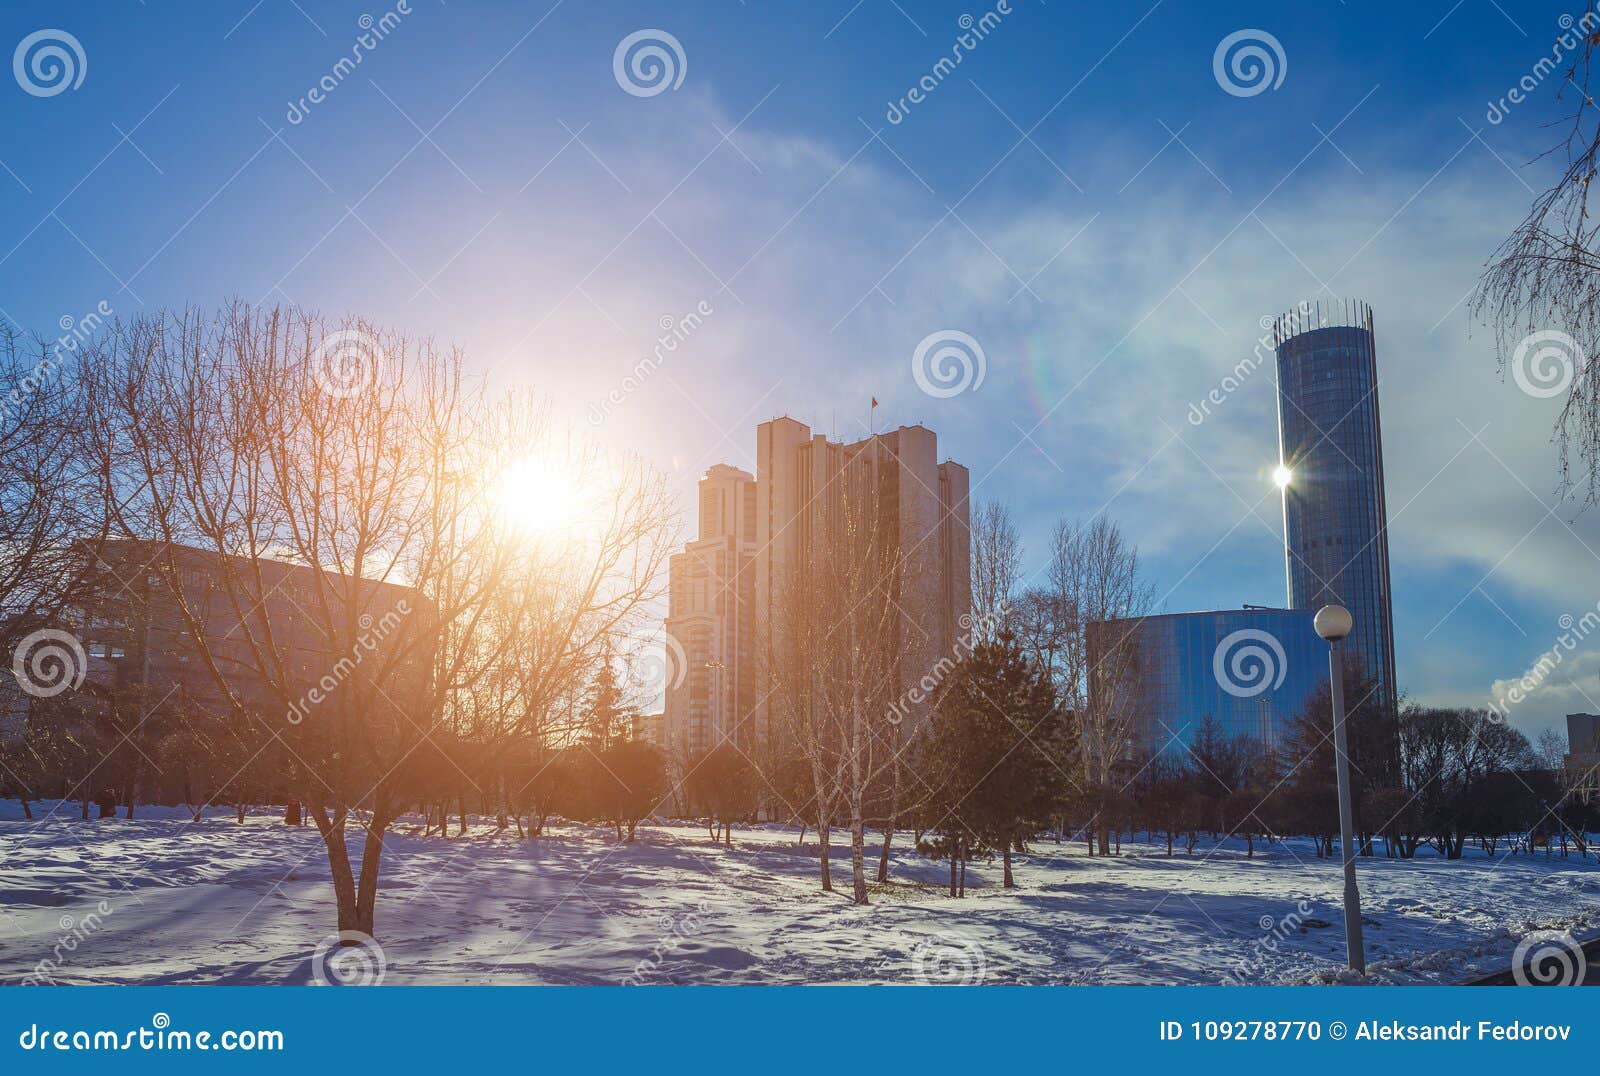 В екатеринбурге потеплеет. Екатеринбург весной. Потепление в ЕКБ. Екатеринбург ранней весной.